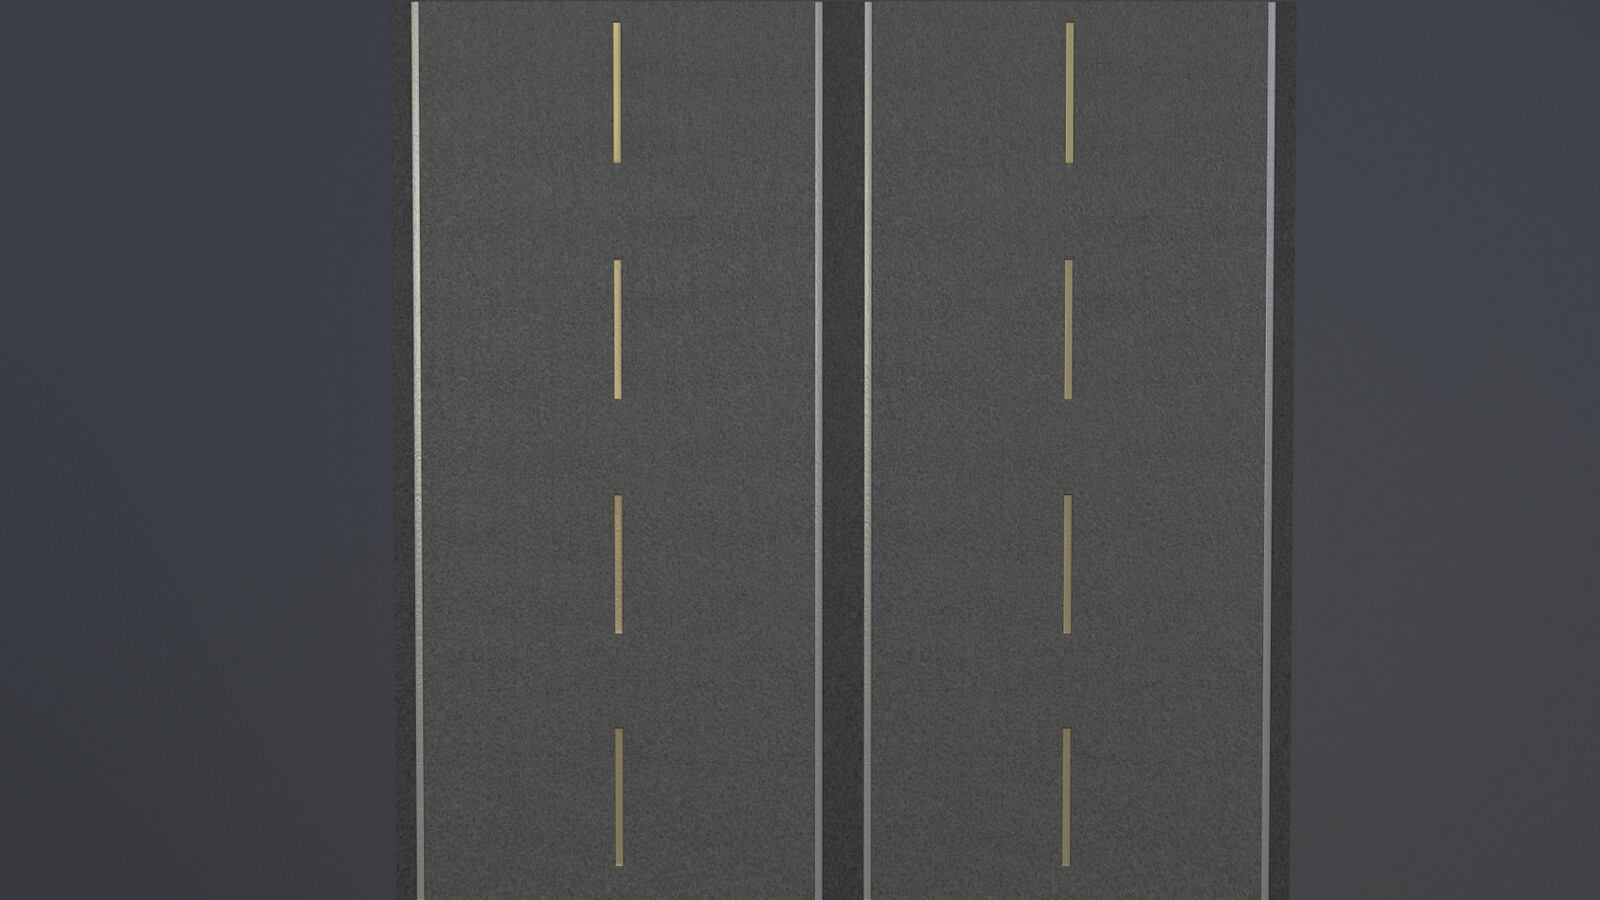 Dual lane road variant